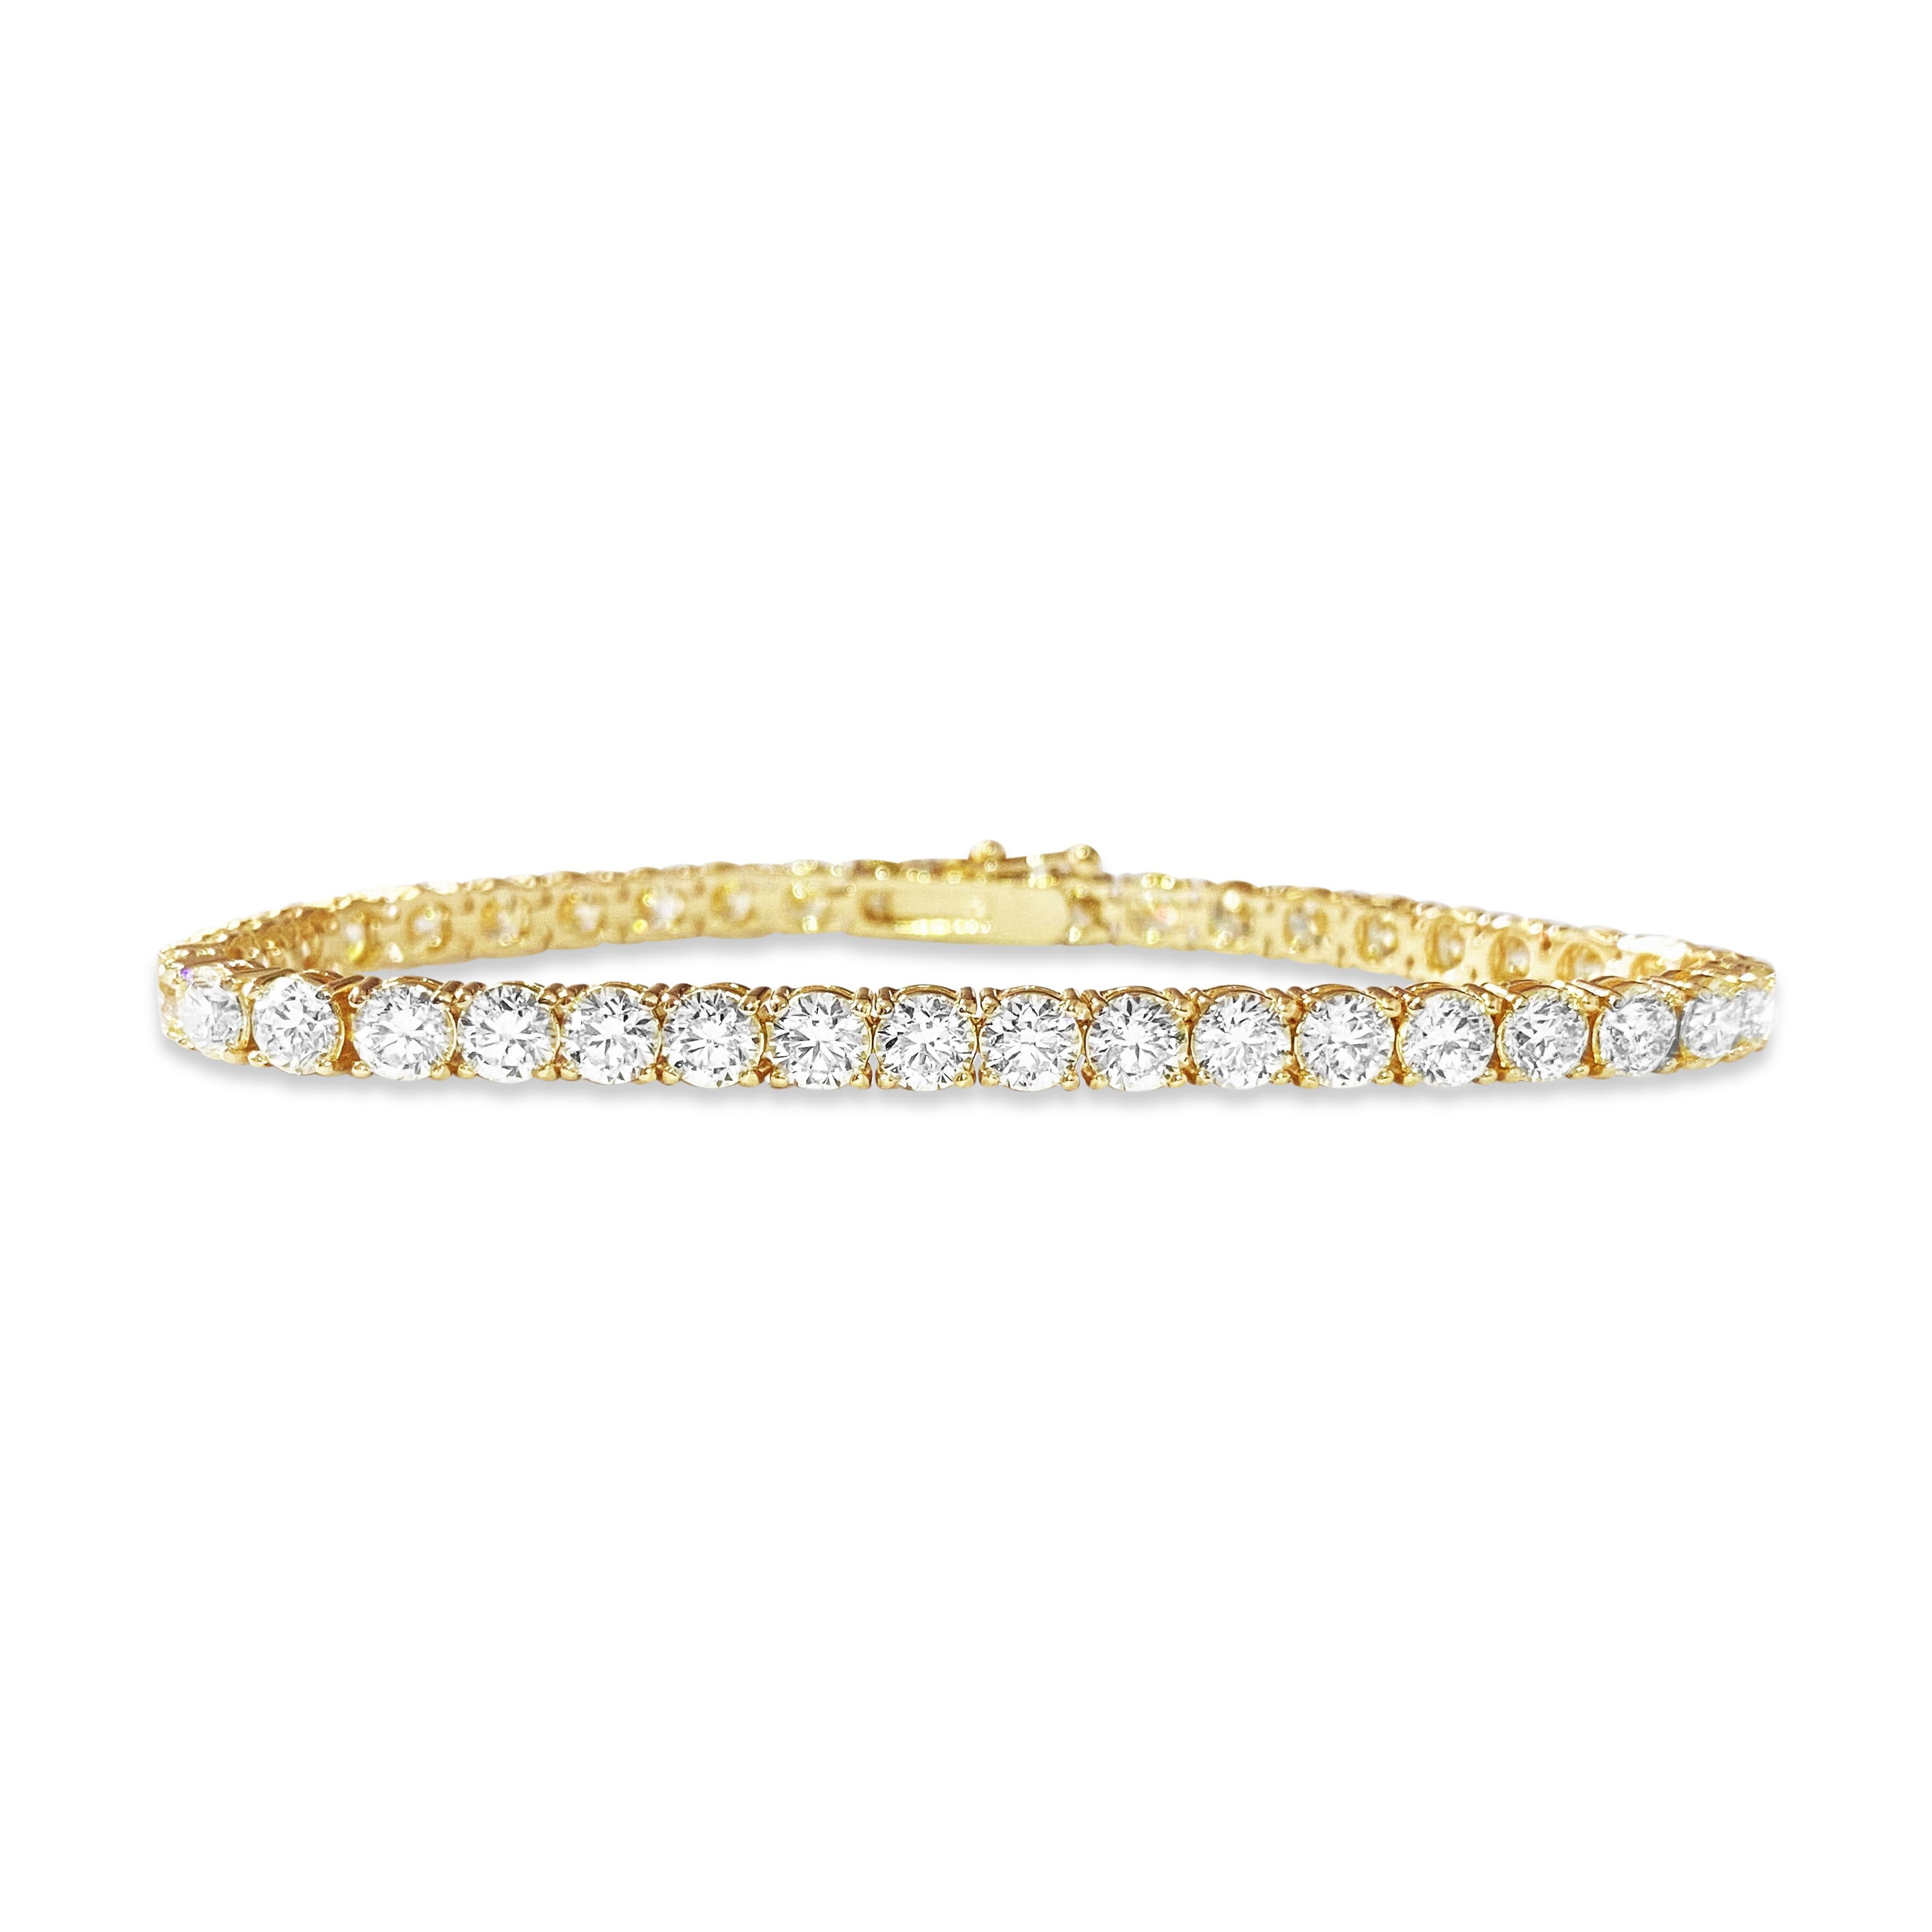 Entrez dans l'élégance avec notre exquis bracelet tennis en diamants, réalisé en or jaune rayonnant. Orné d'une étonnante série de diamants ronds de taille brillant, d'une pureté VVS, ce bracelet est un symbole de luxe intemporel. Parfait pour tous